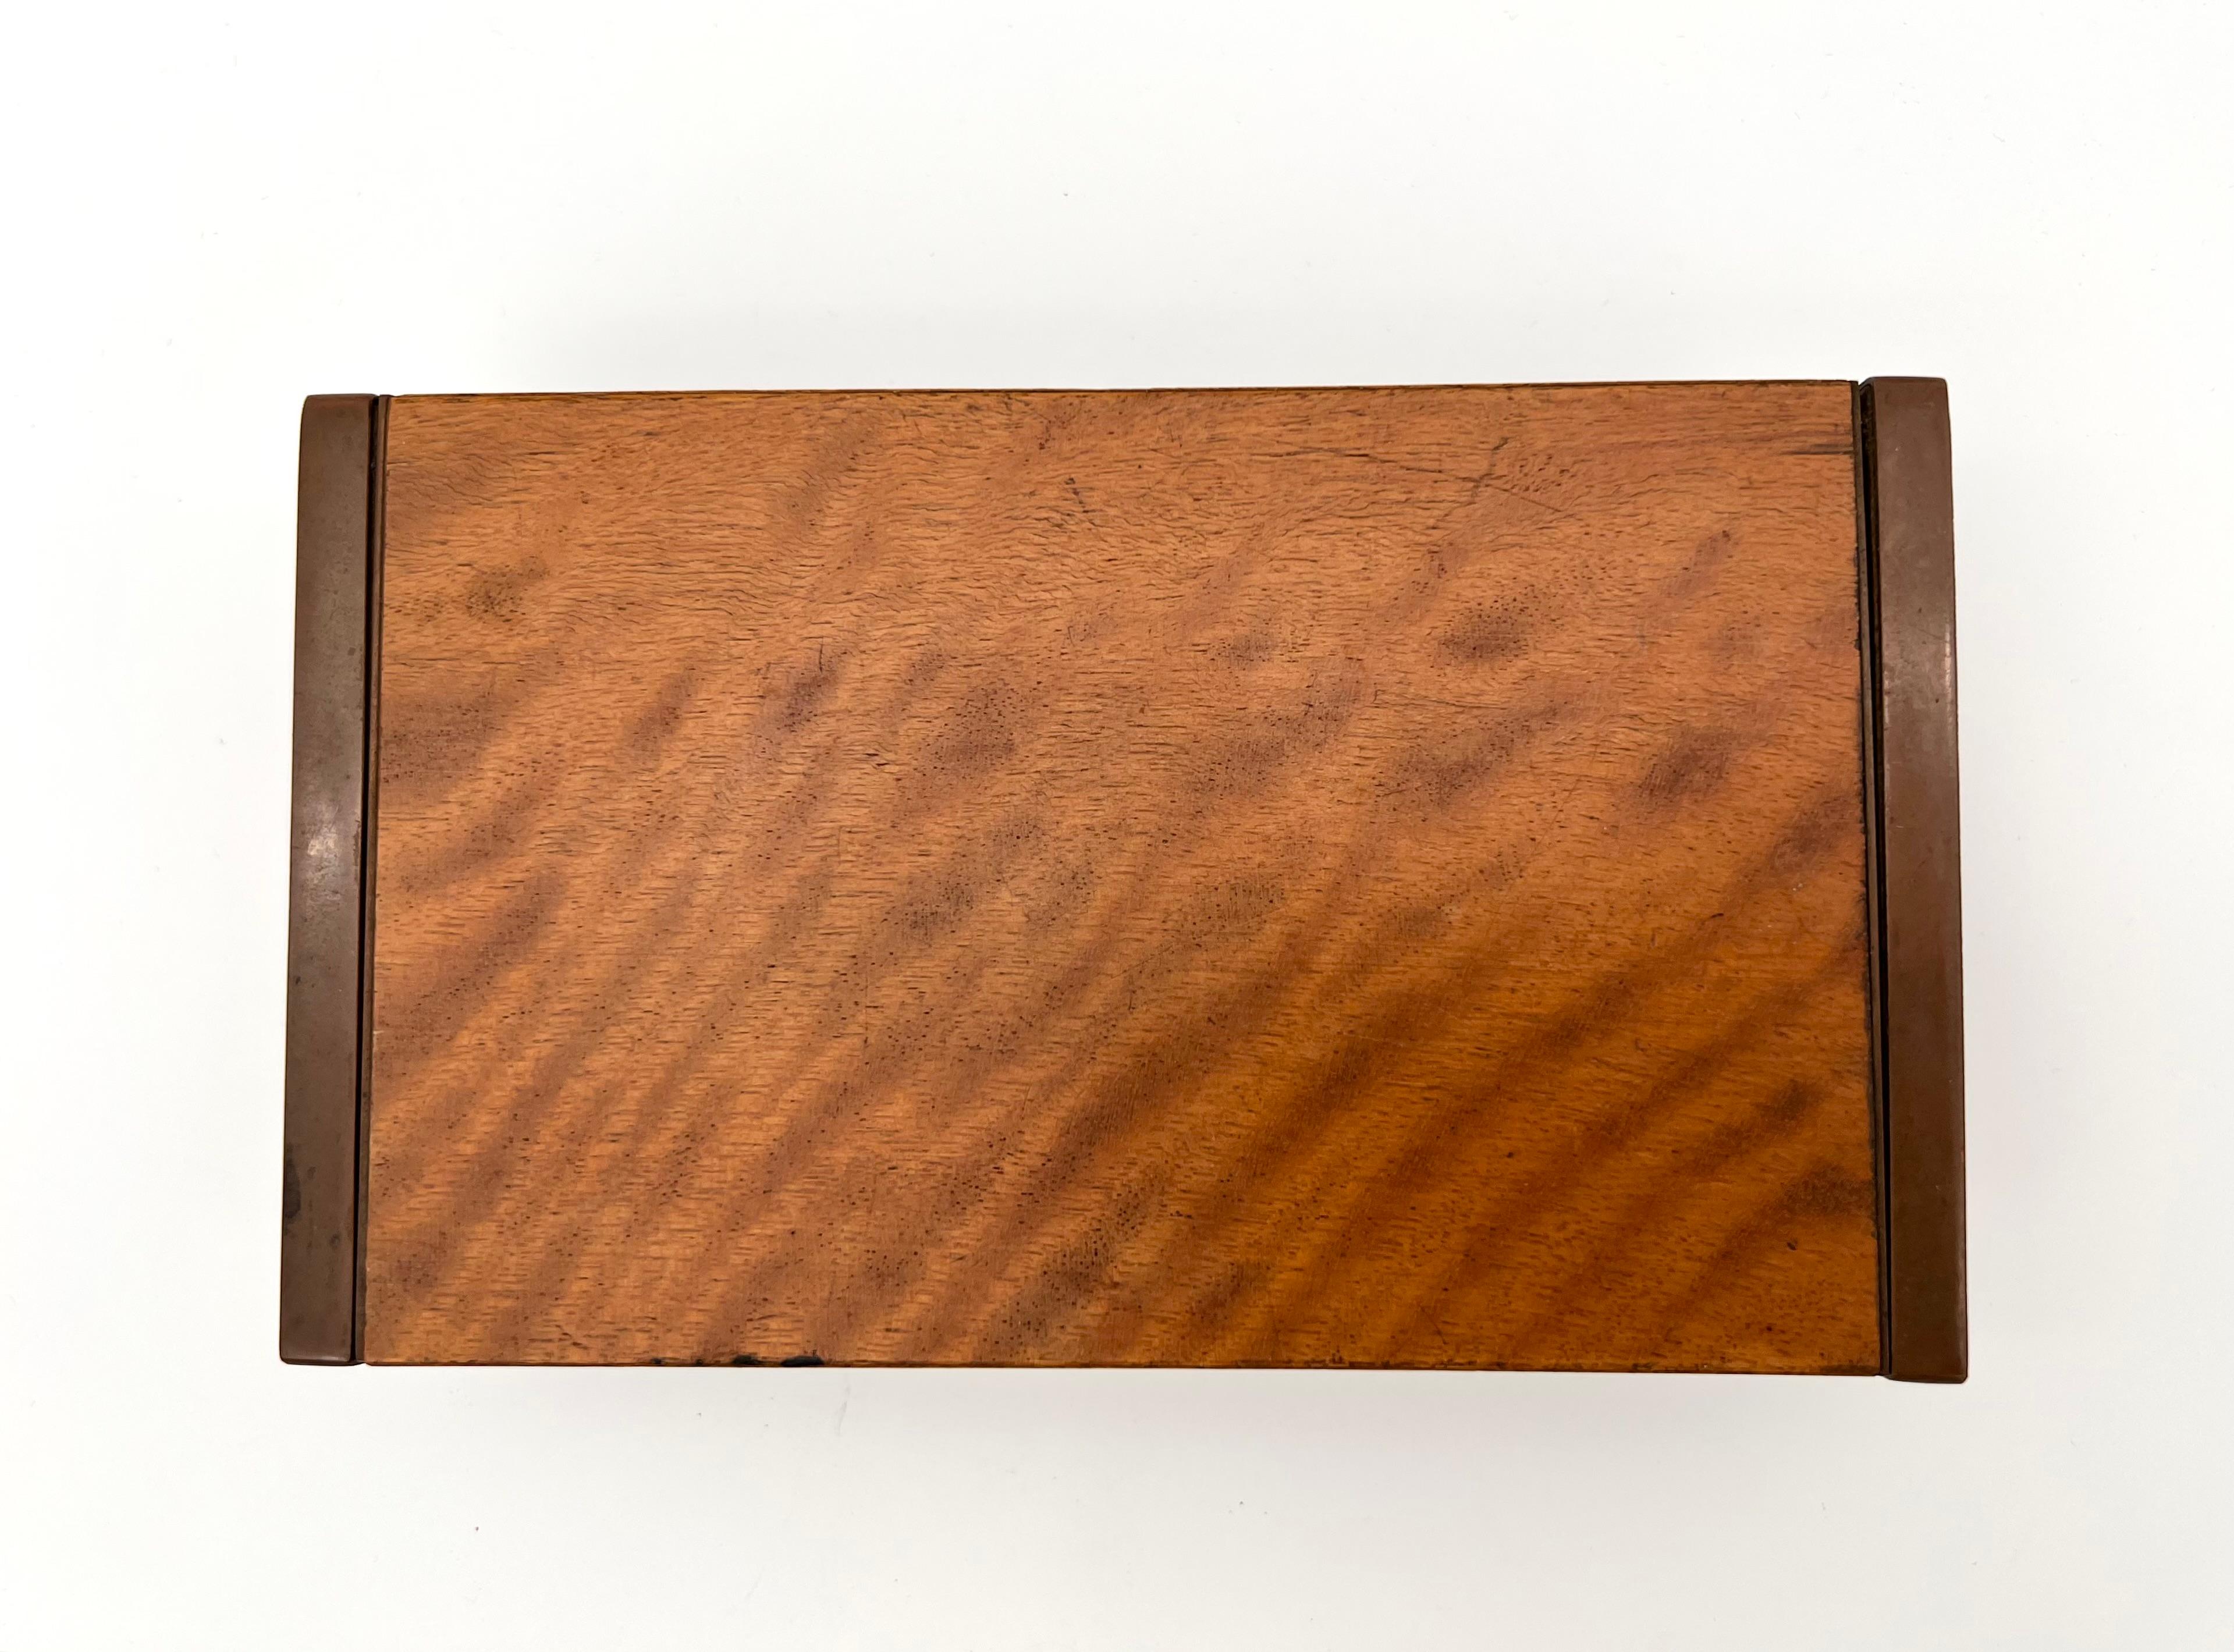 Boîte Art déco en bois, intérieur en cuivre. Par Carl Auböck, années 1930.

Répertorié dans le catalogue 